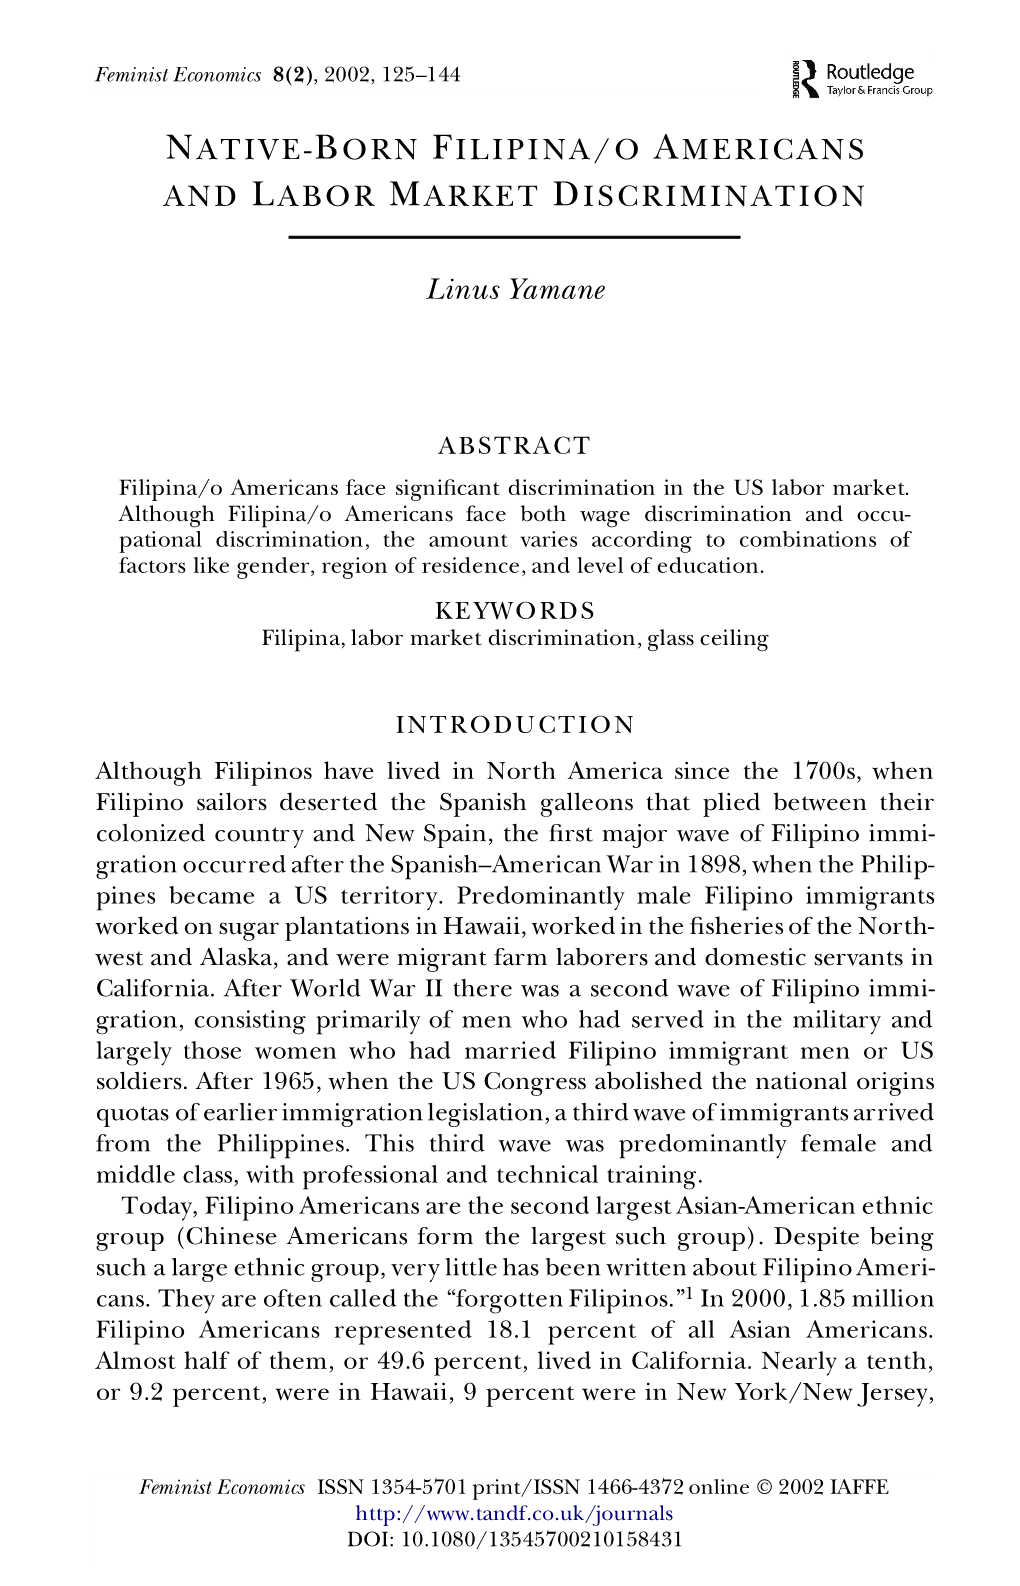 Native-Born Filipina/O Americans and Labor Market Discrimination